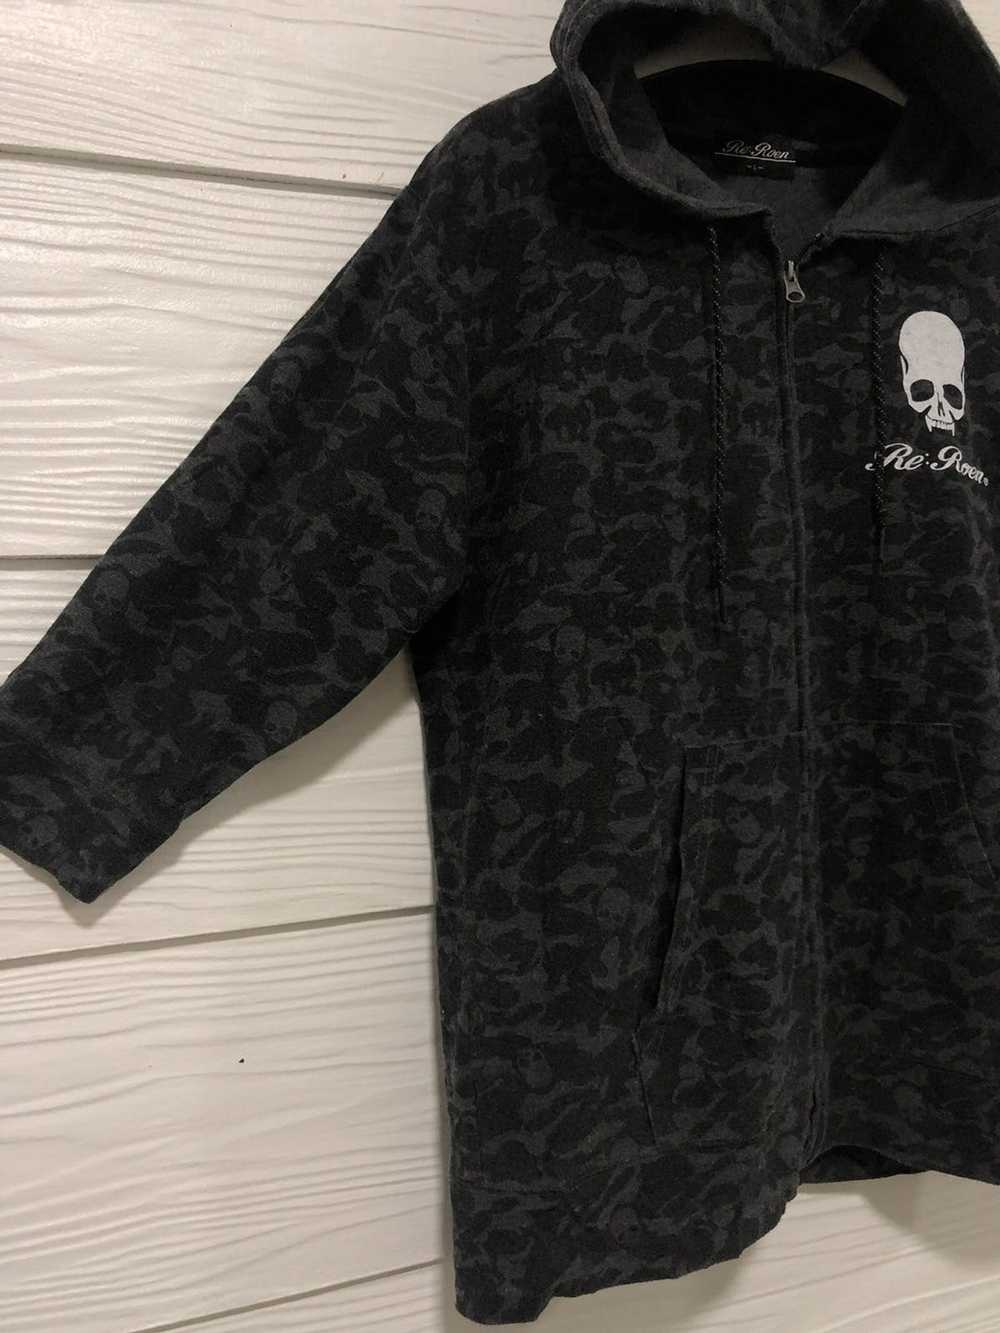 Roen × Skulls Roen skuul over print hoodie inspir… - image 2